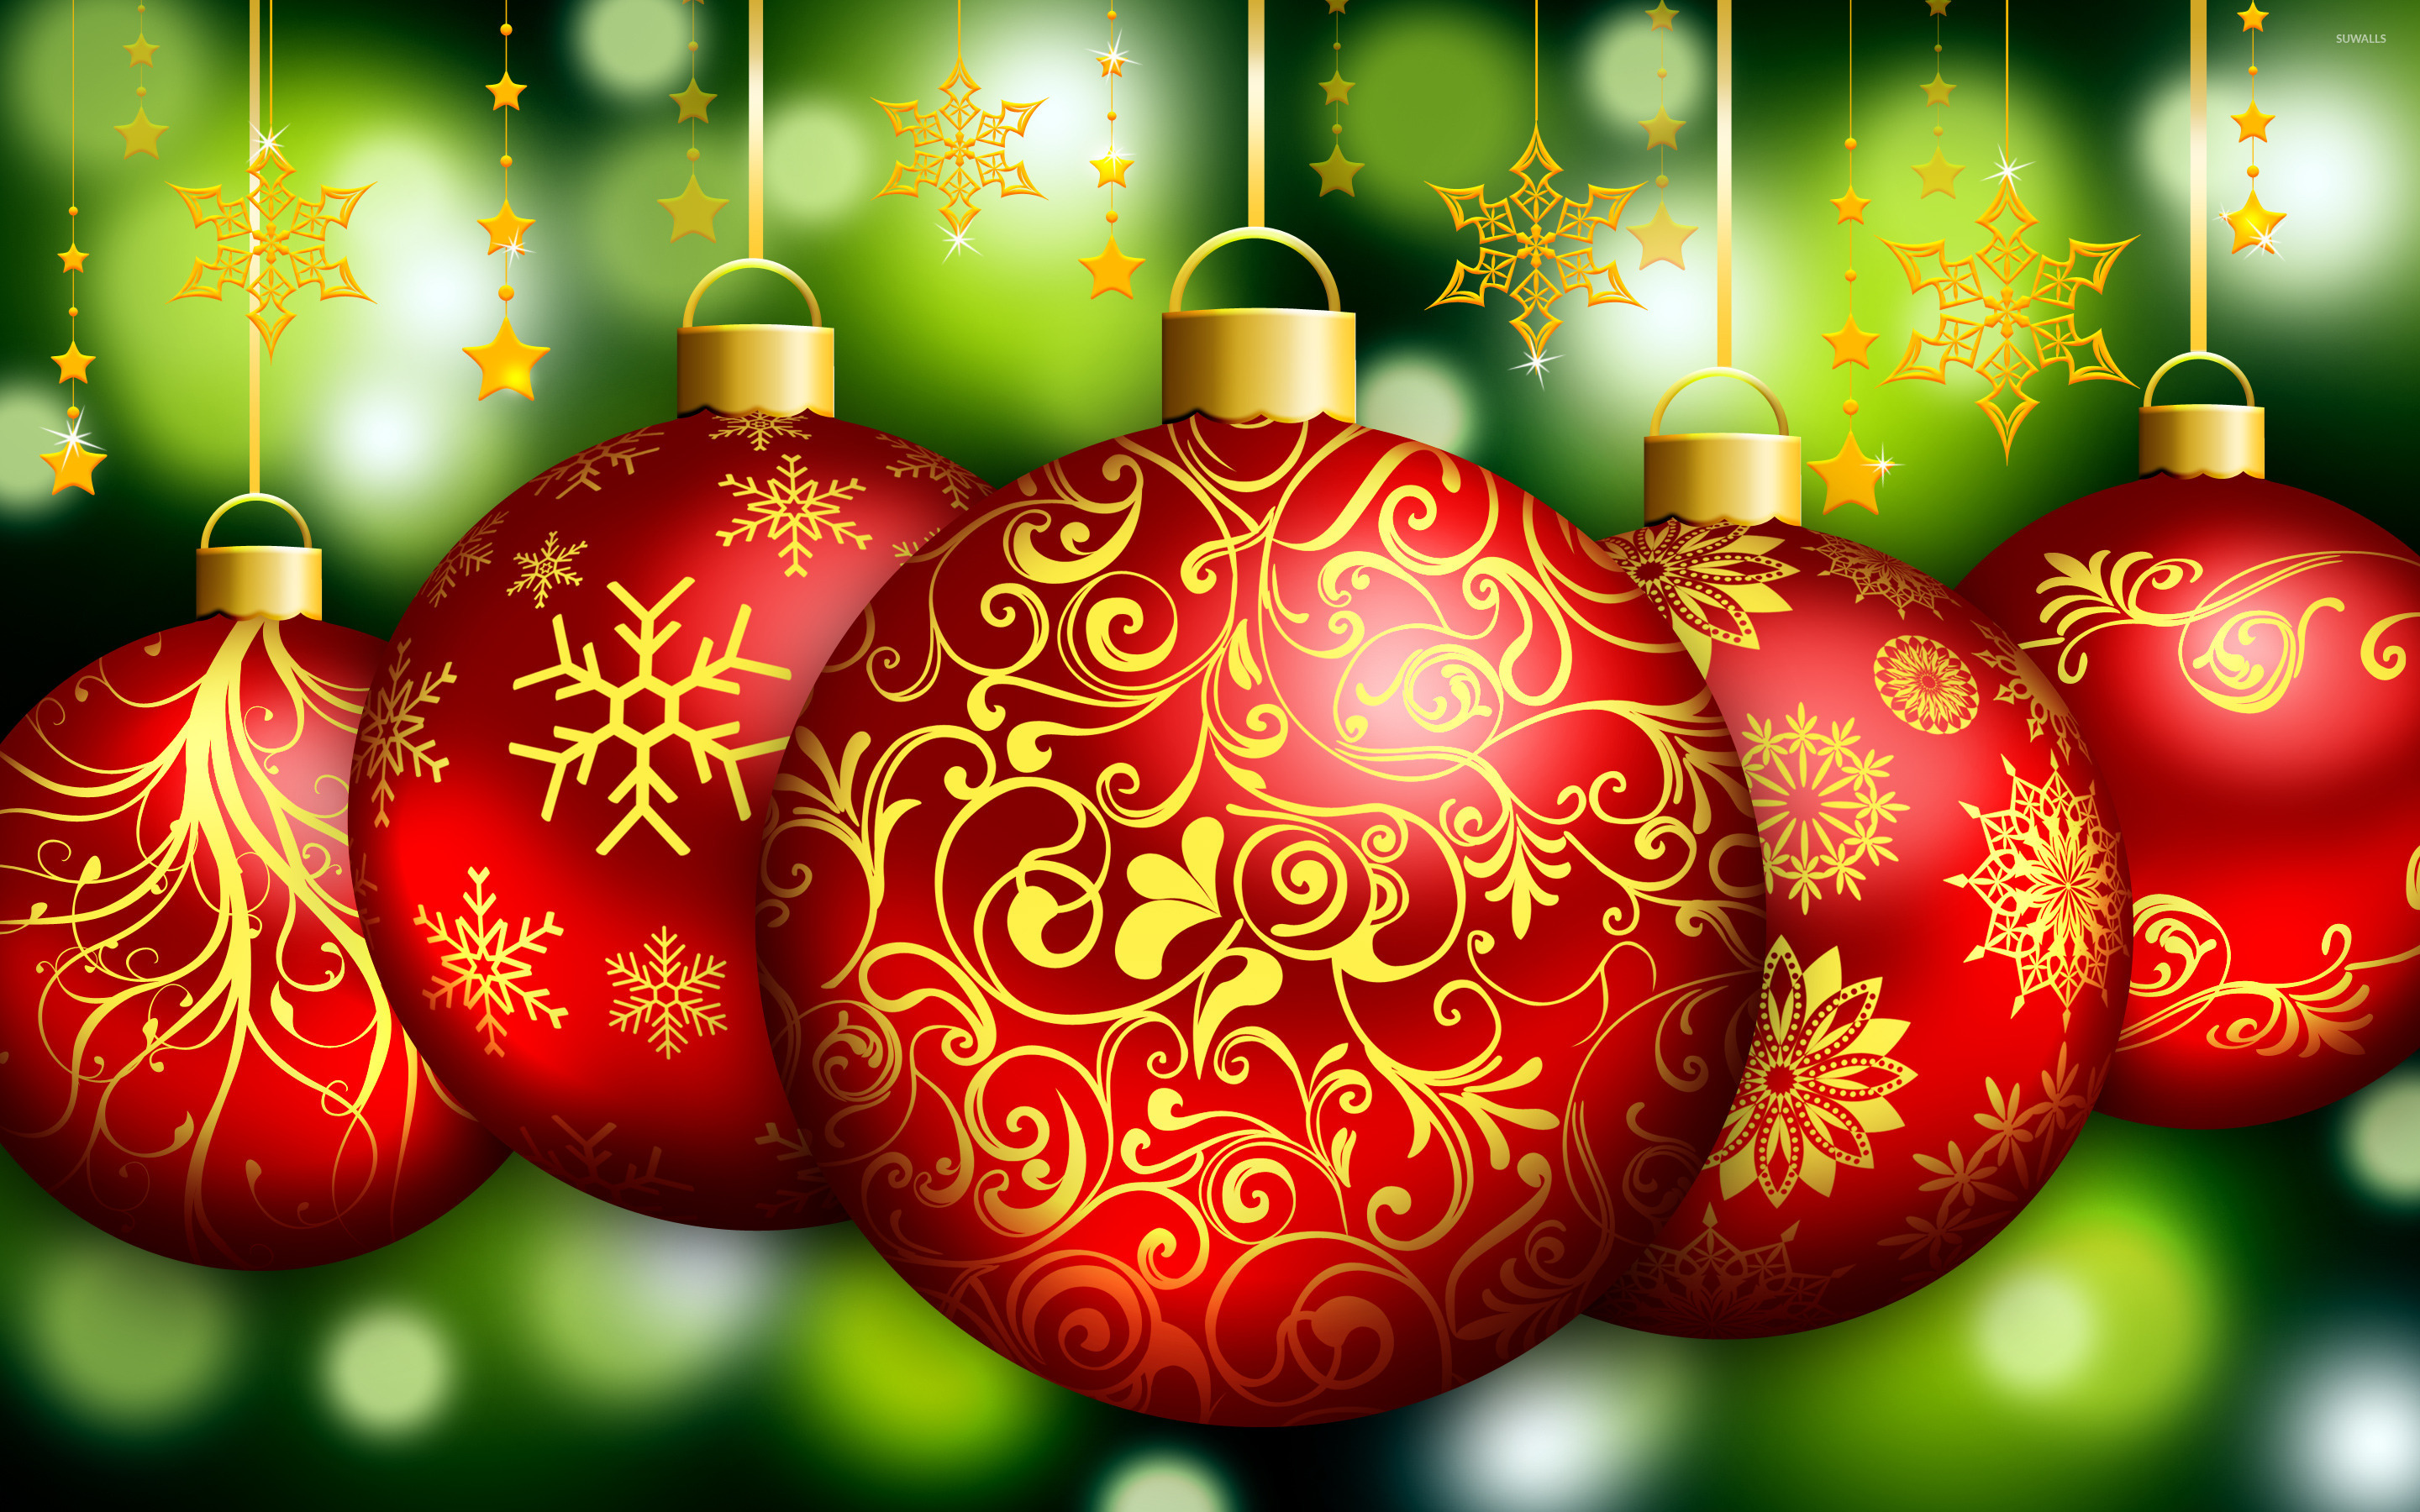 papel tapiz de adorno de navidad,decoración navideña,decoración navideña,ornamento,adorno de vacaciones,navidad